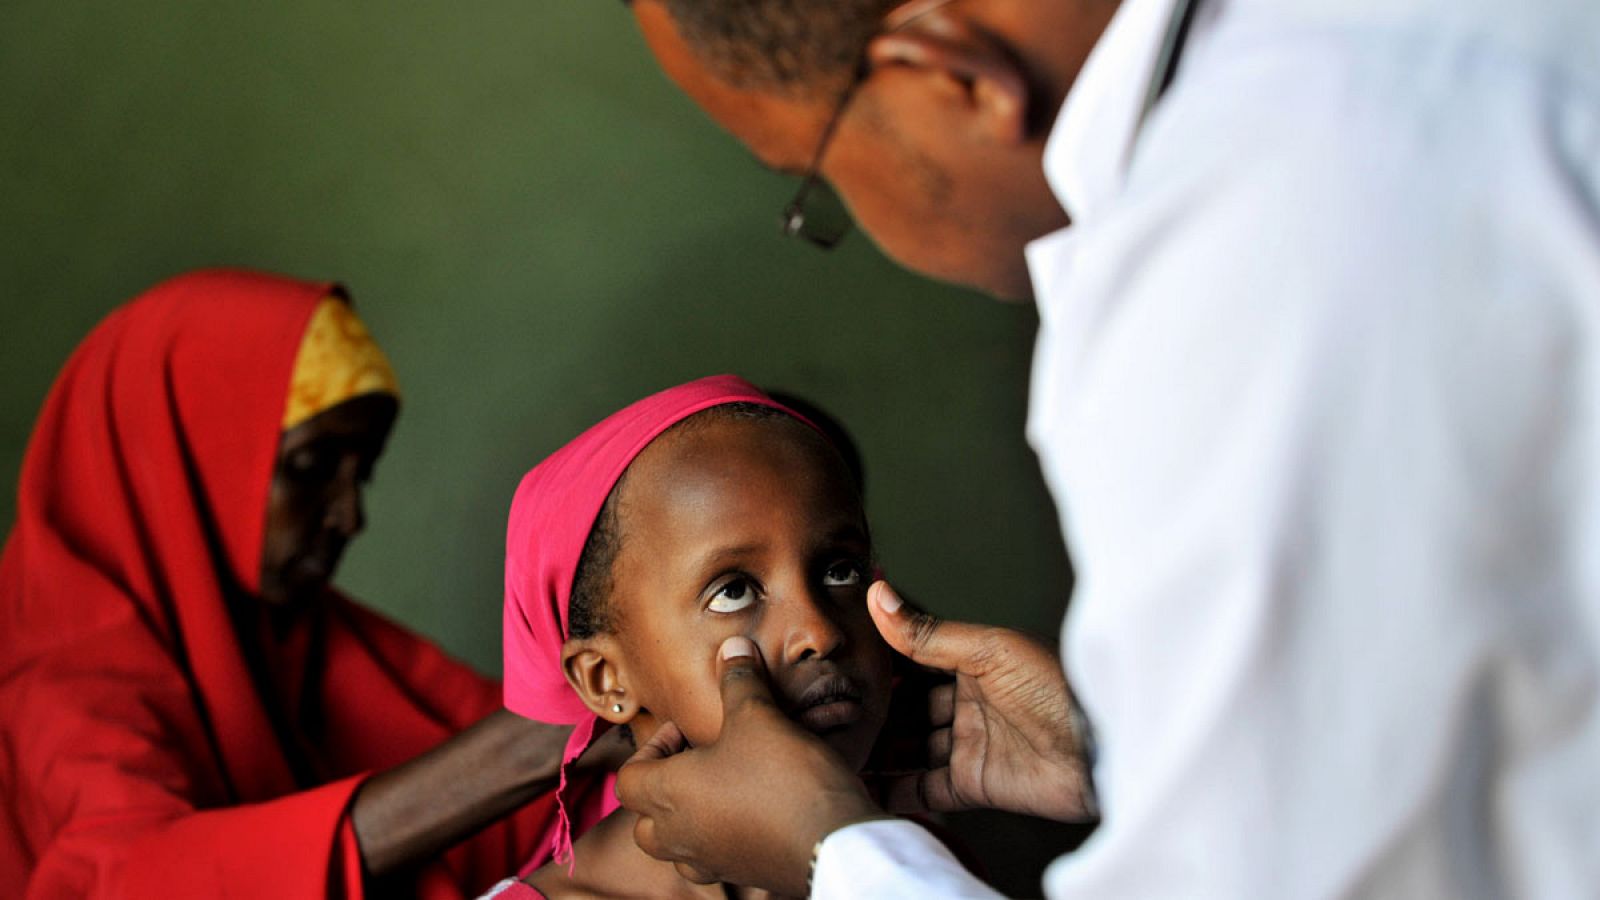 Un médico examina a una niña en un hospital en Somalia.